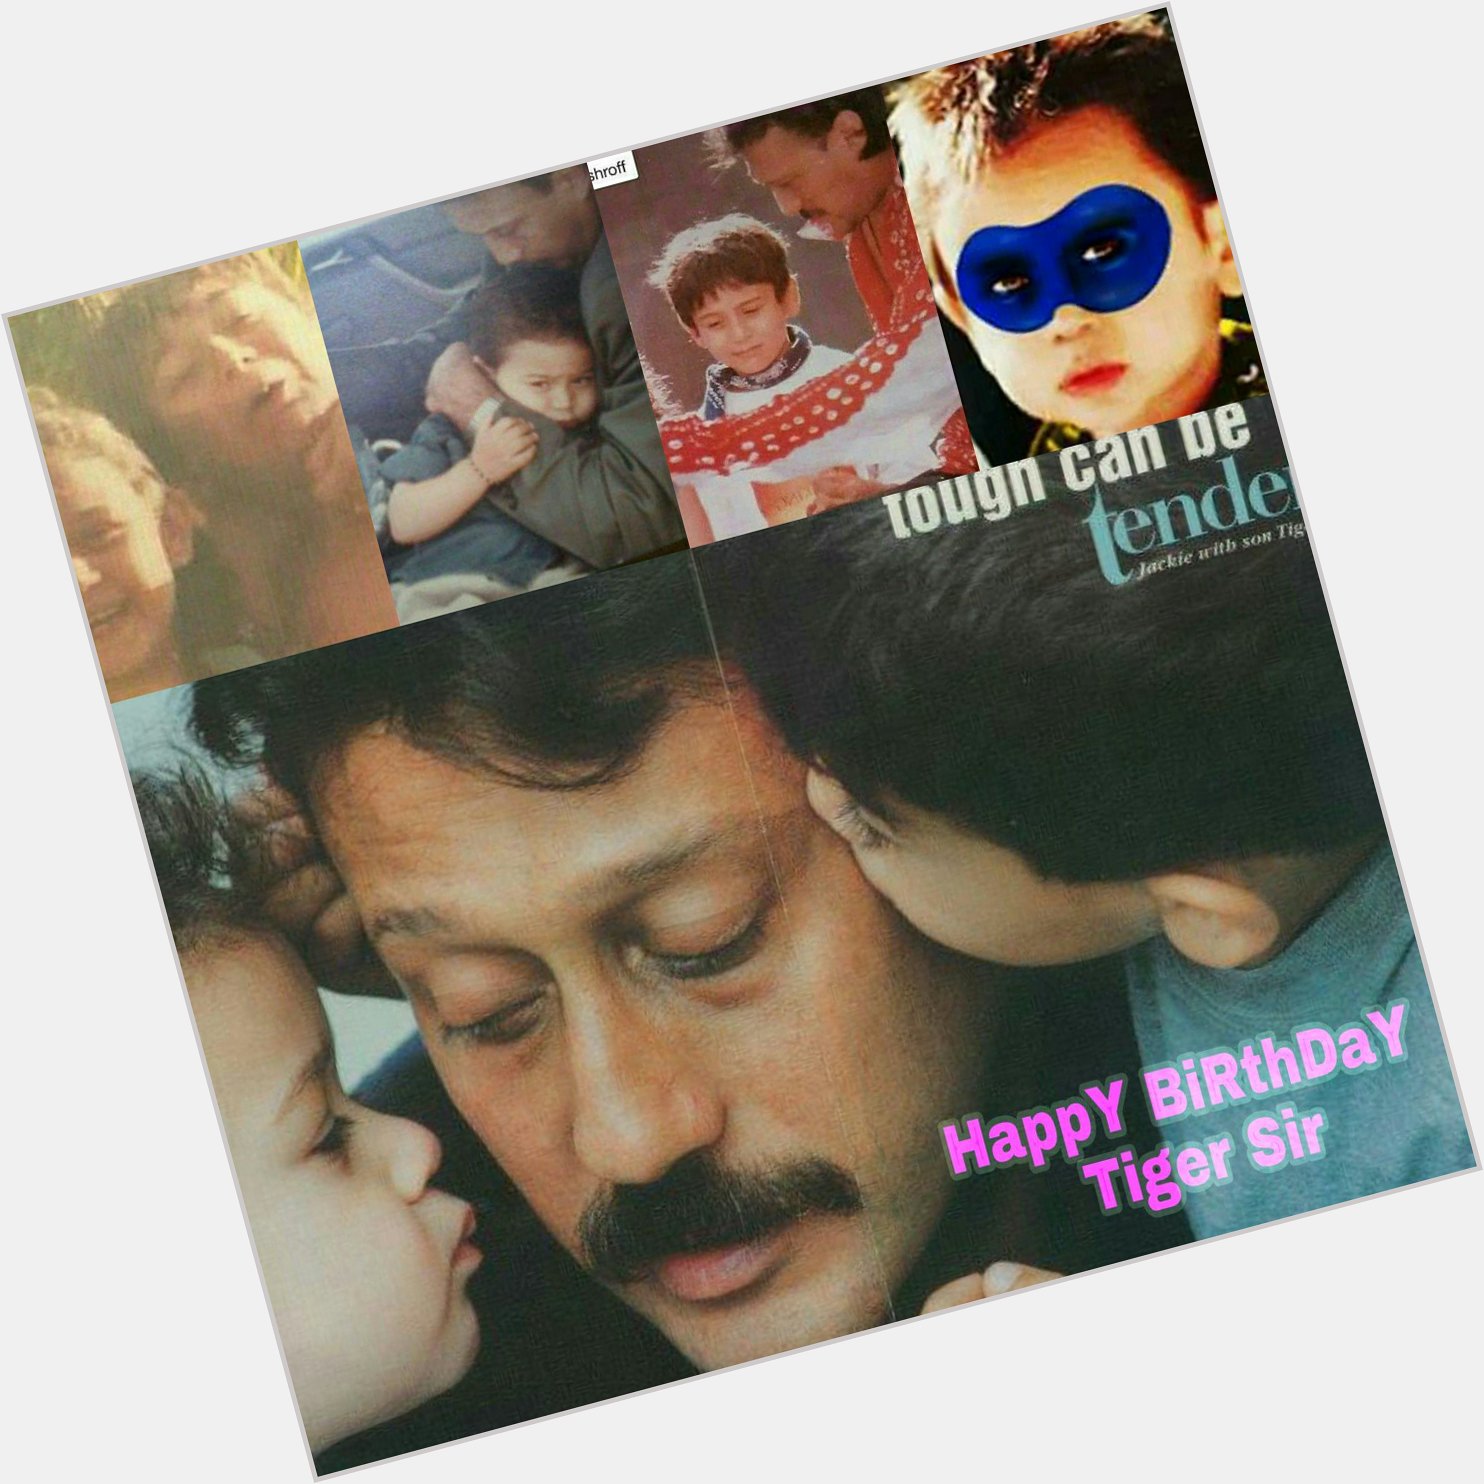 HappY Birthday Bollywood
super Star 
 
Tiger Shroff sir 